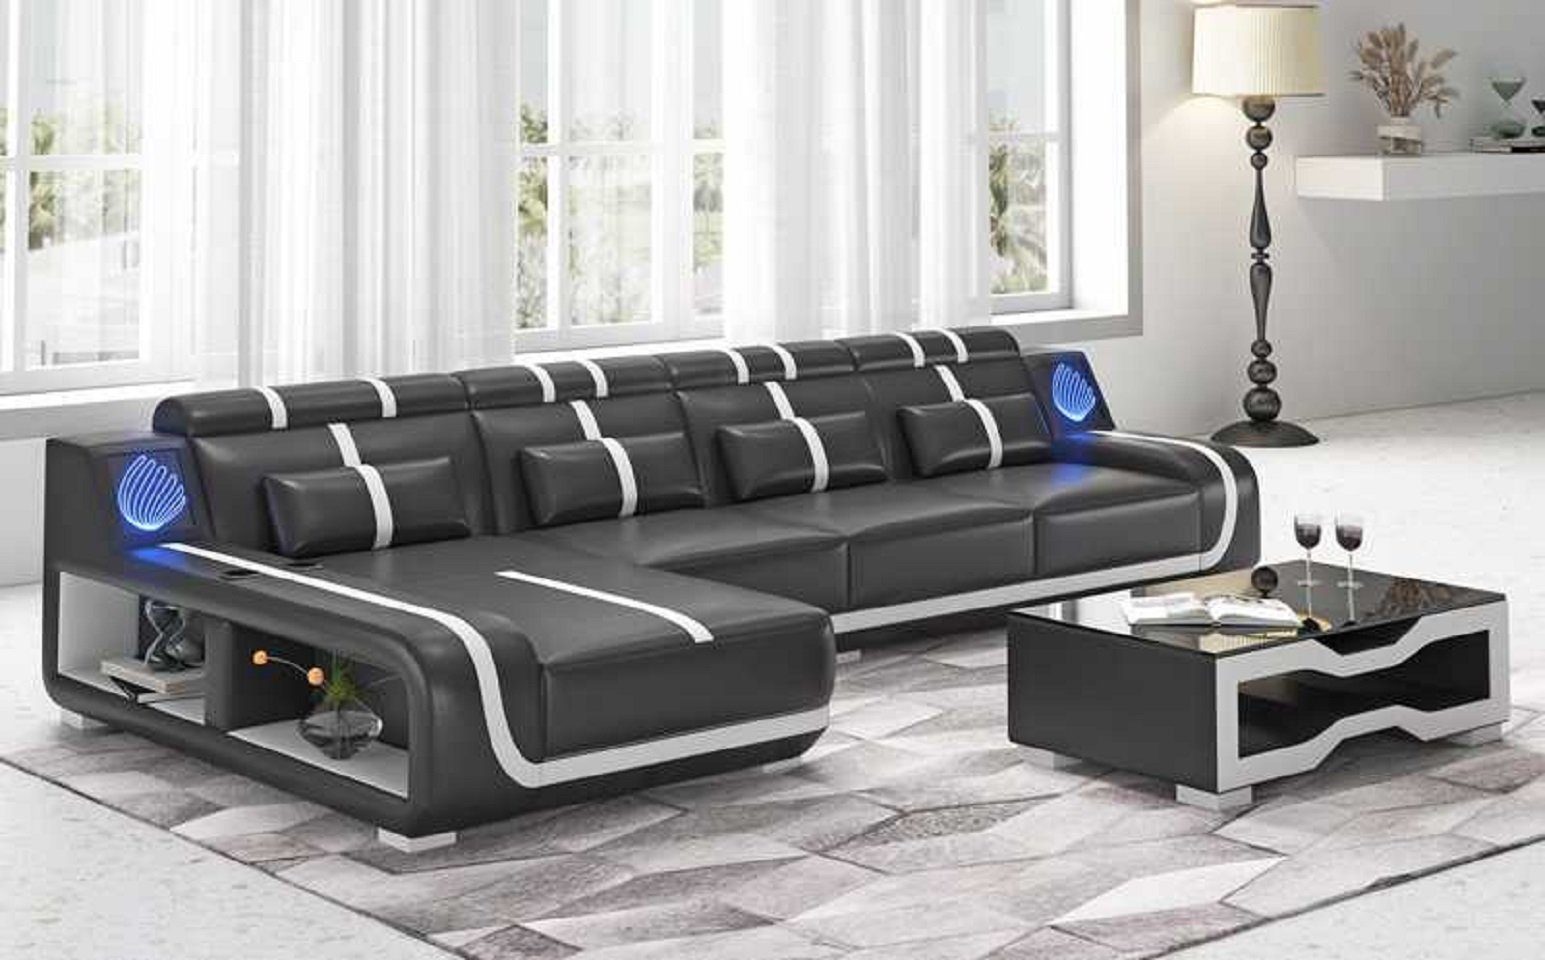 Liege Ecksofa 3 couchen, Teile, L Form Modern in JVmoebel Sofa Design Couch Made Ecksofa Schwarz Europe